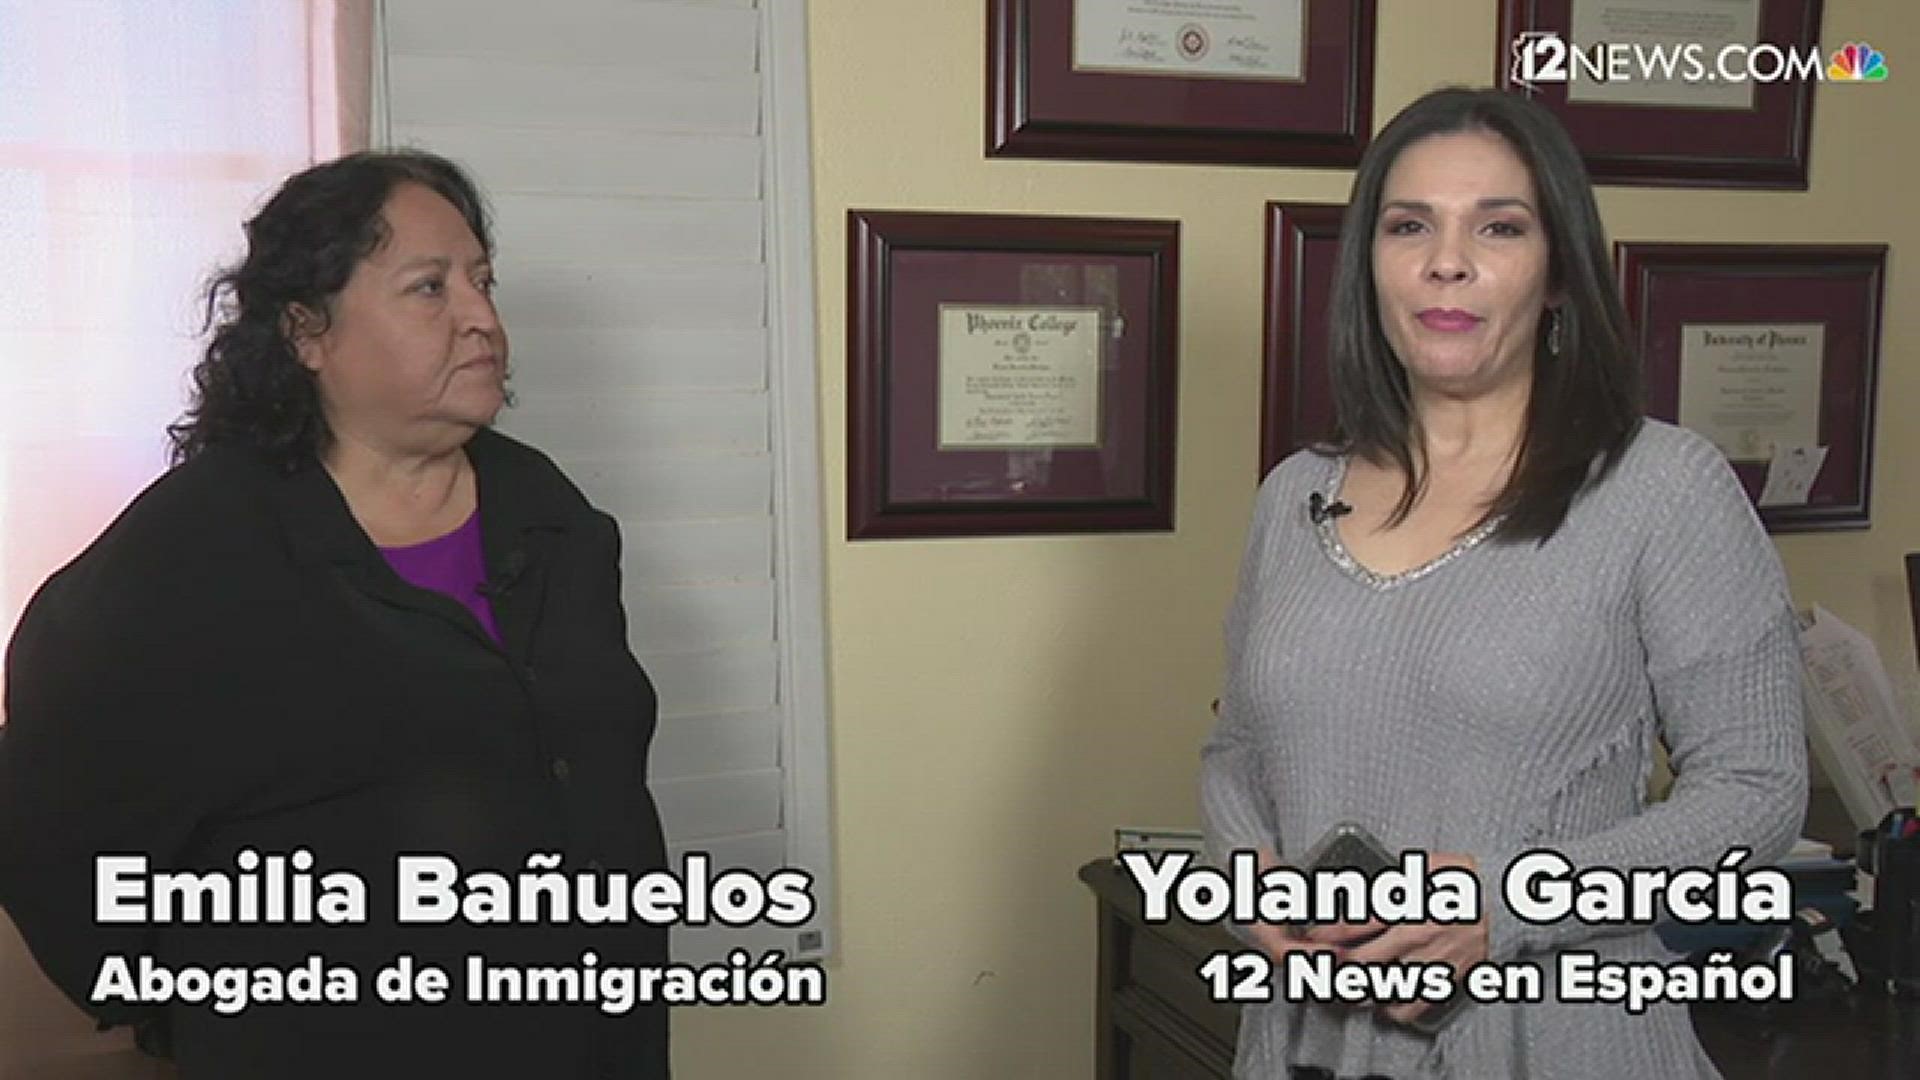 Se han propuesto cambios a la regla de carga pública de inmigración. La abogada Emilia Bañuelos explica lo que significa para la comunicad migrante.